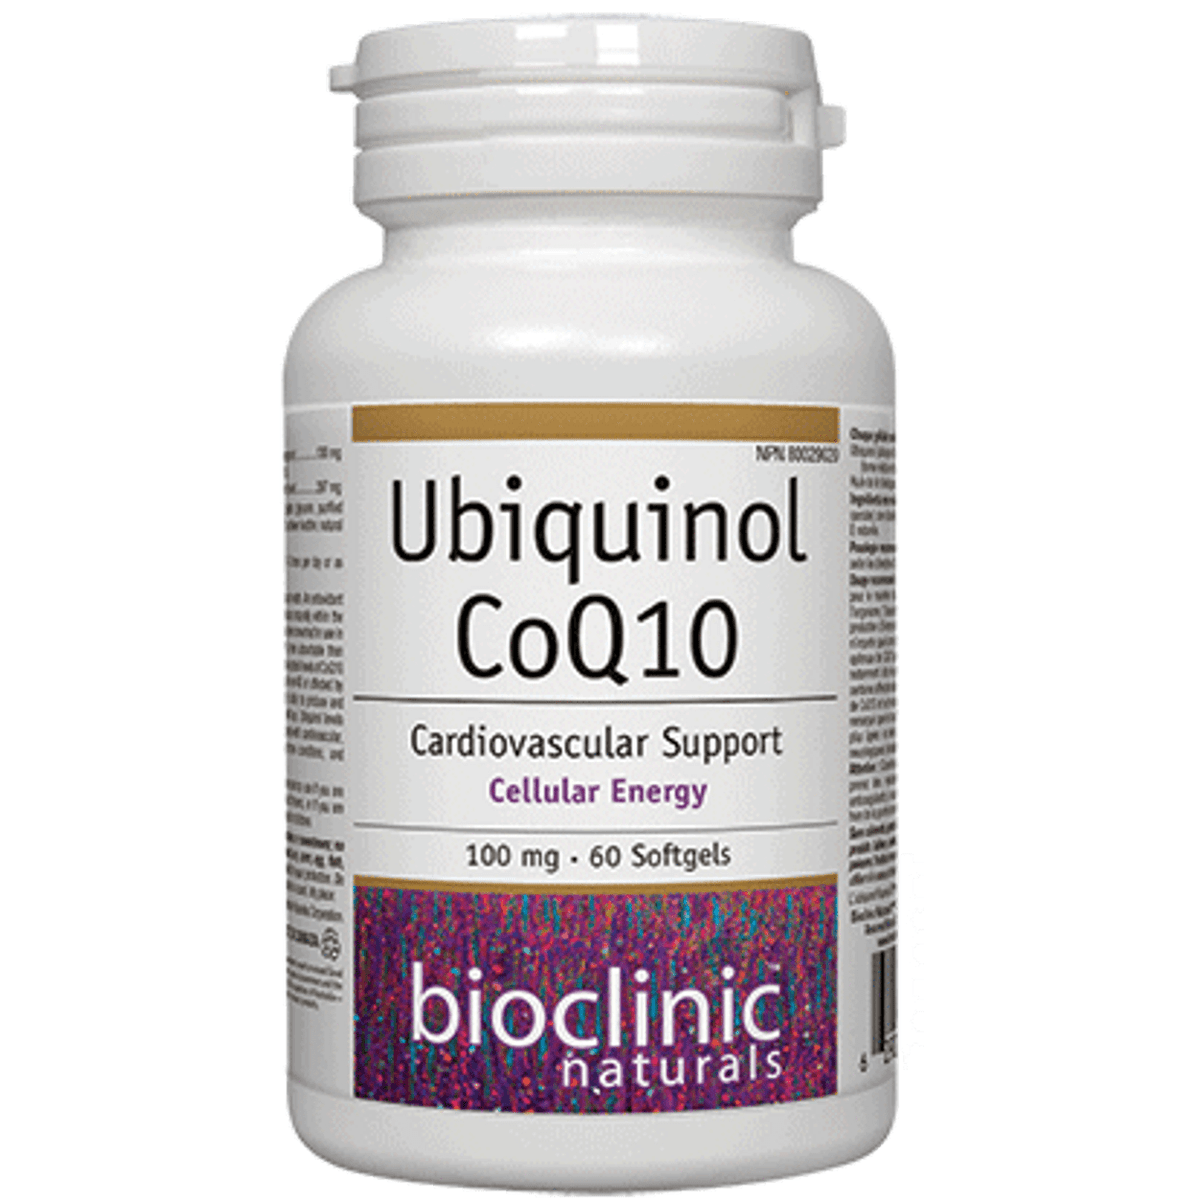 Bioclinic Naturals Ubiquinol CoQ10 -100 mg 60 Softgels Supplements - Cardiovascular Health at Village Vitamin Store